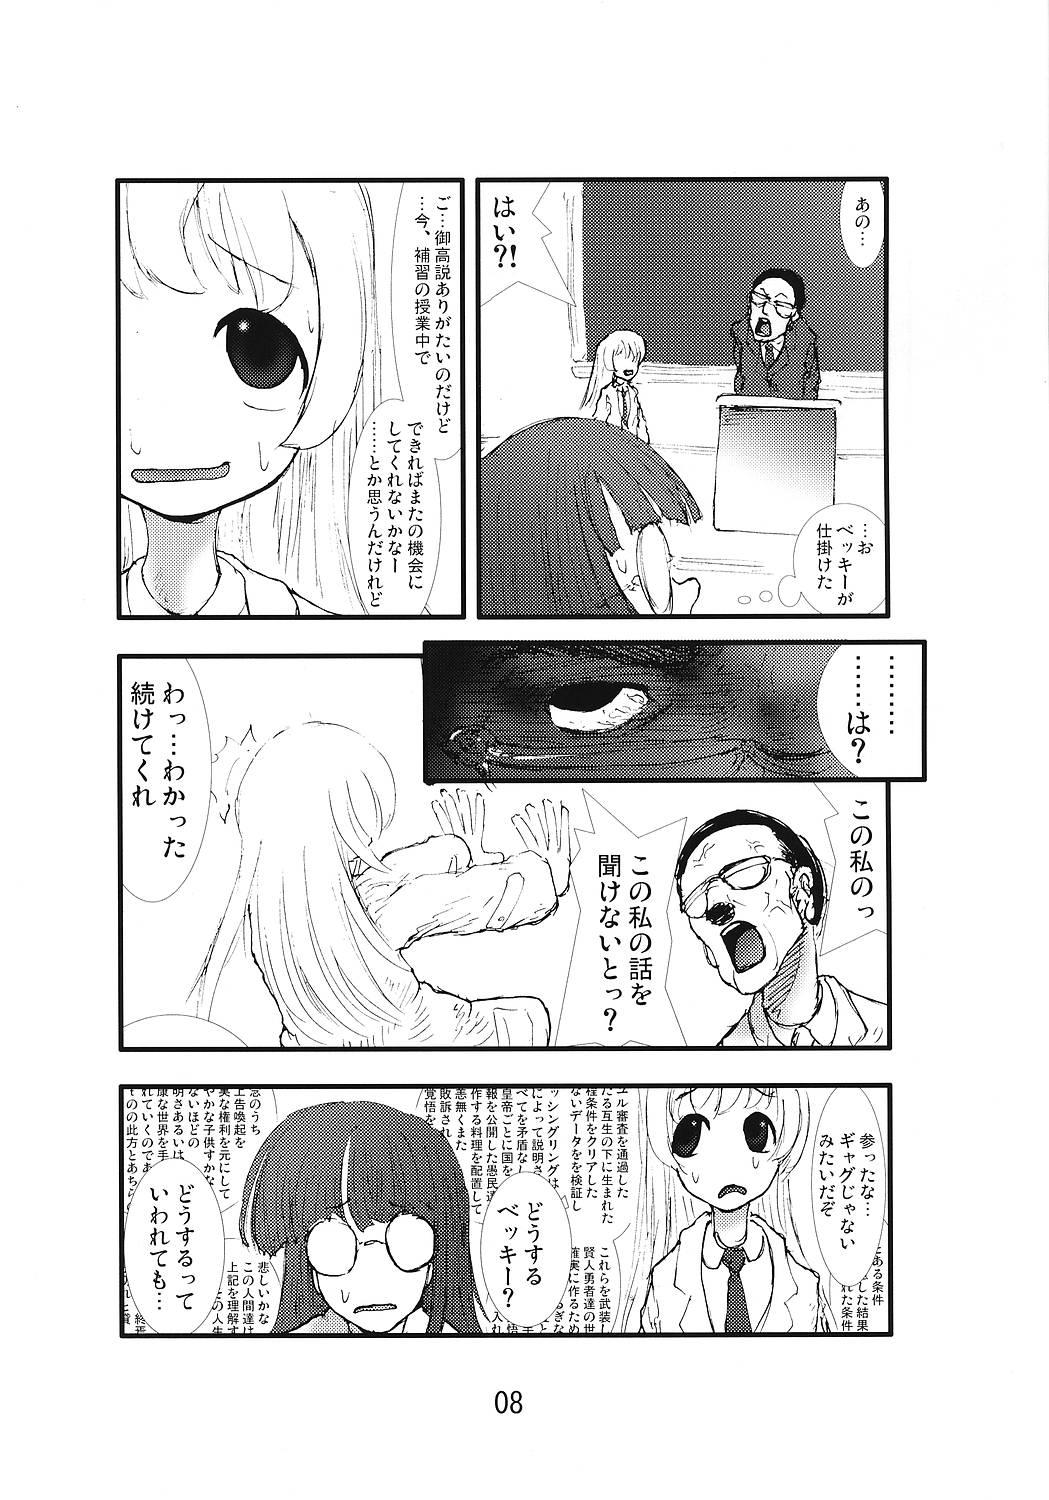 Short Hair Anaru Matsuri Paniponi Gakuen Juudan Anaru Ryoujoku Jiken Higaisha File - Pani poni dash Breeding - Page 7